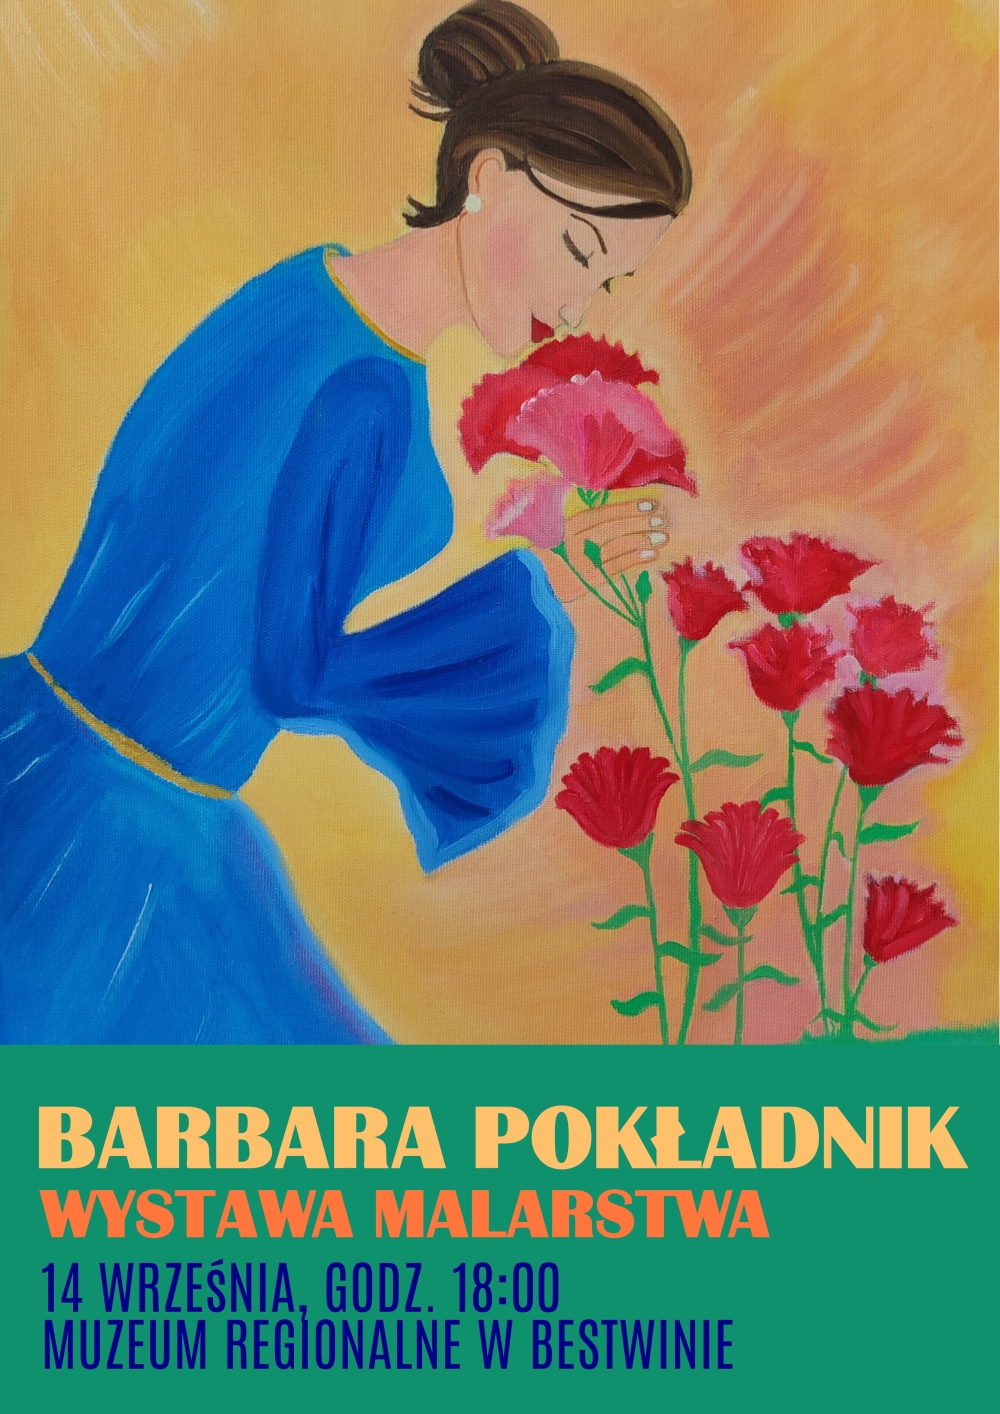   Barbara Pokładnik - wystawa malarstwa - 14 września - Muzeum Regionalne w Bestwinie